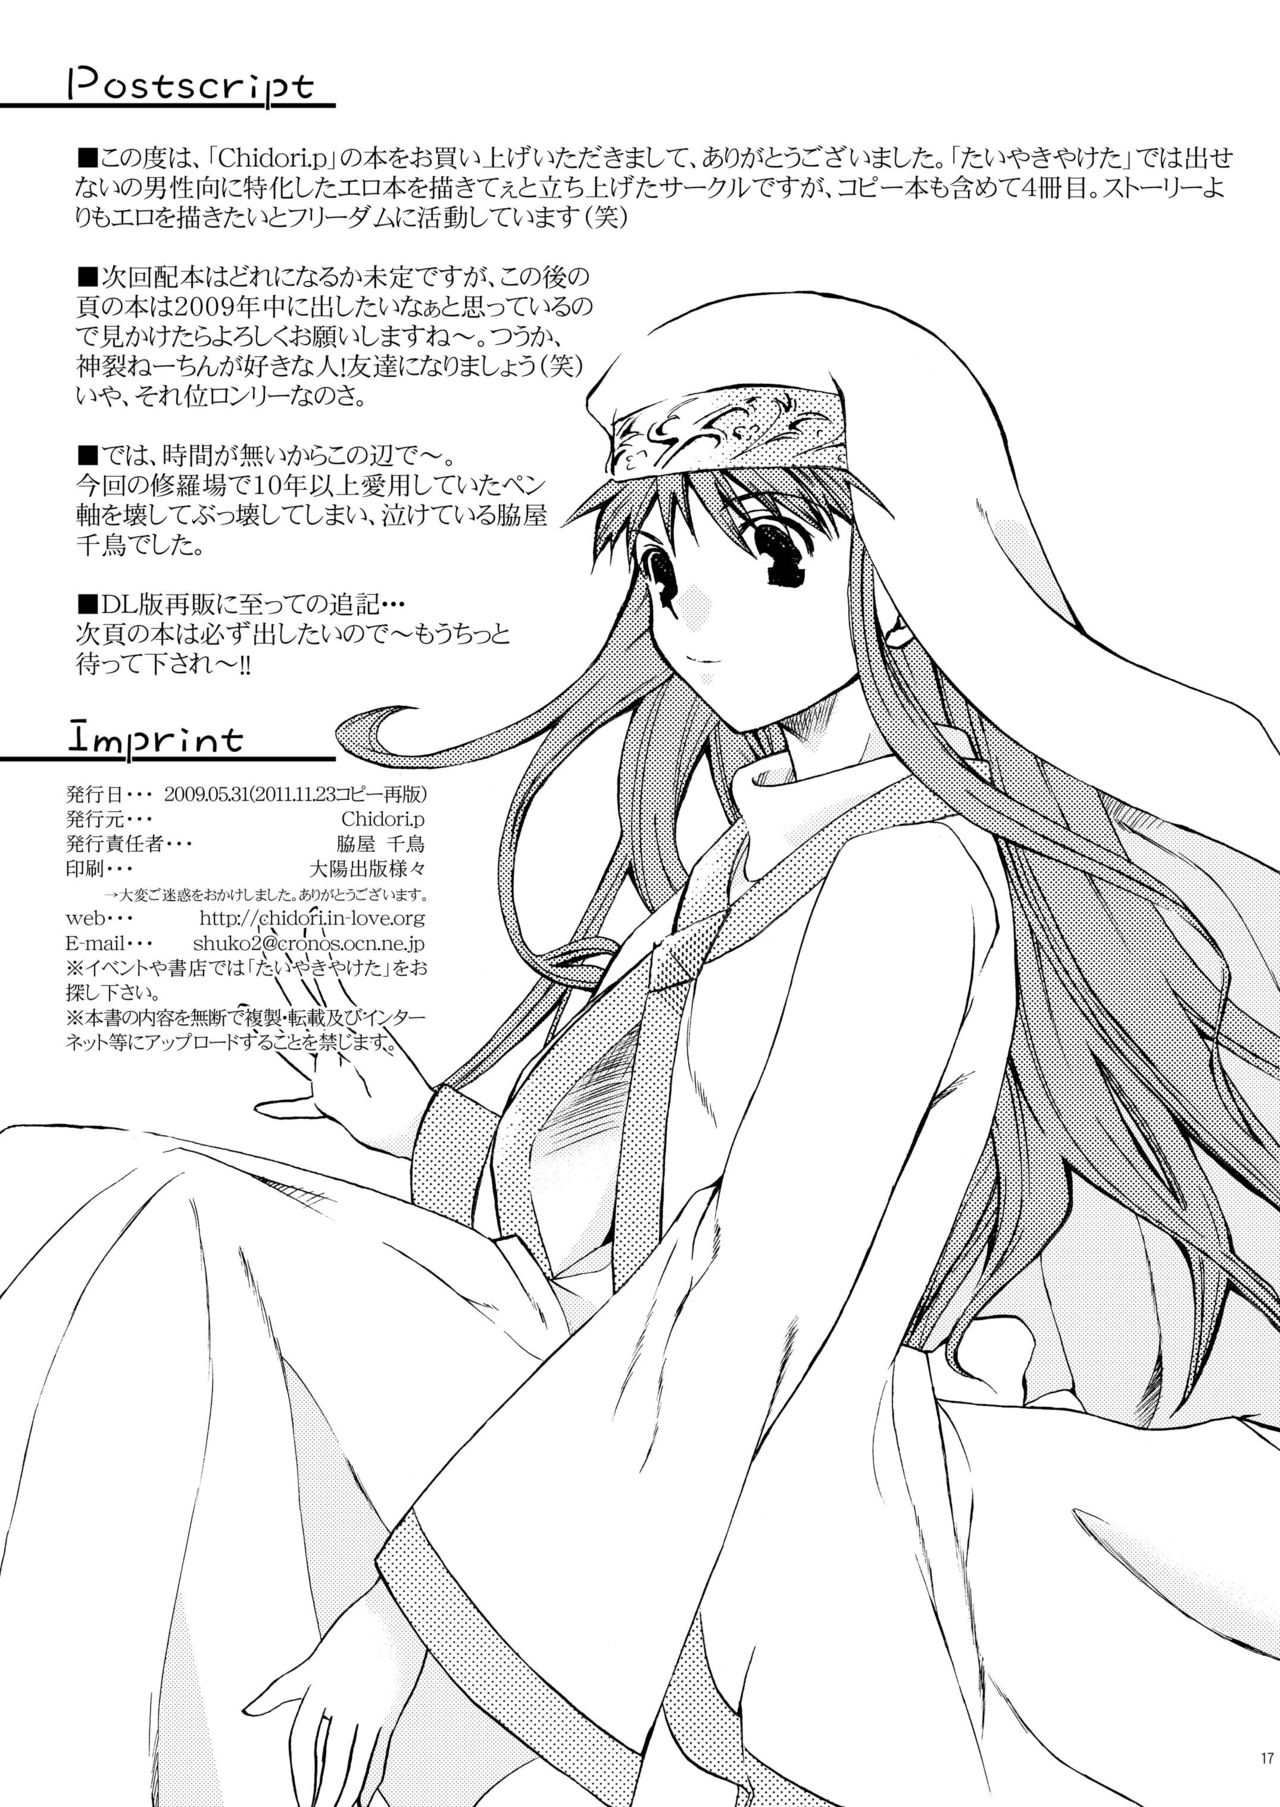 [Taiyakiyaketa] Kanzaki SPECIAL (Toaru Majutsu no Index) 17